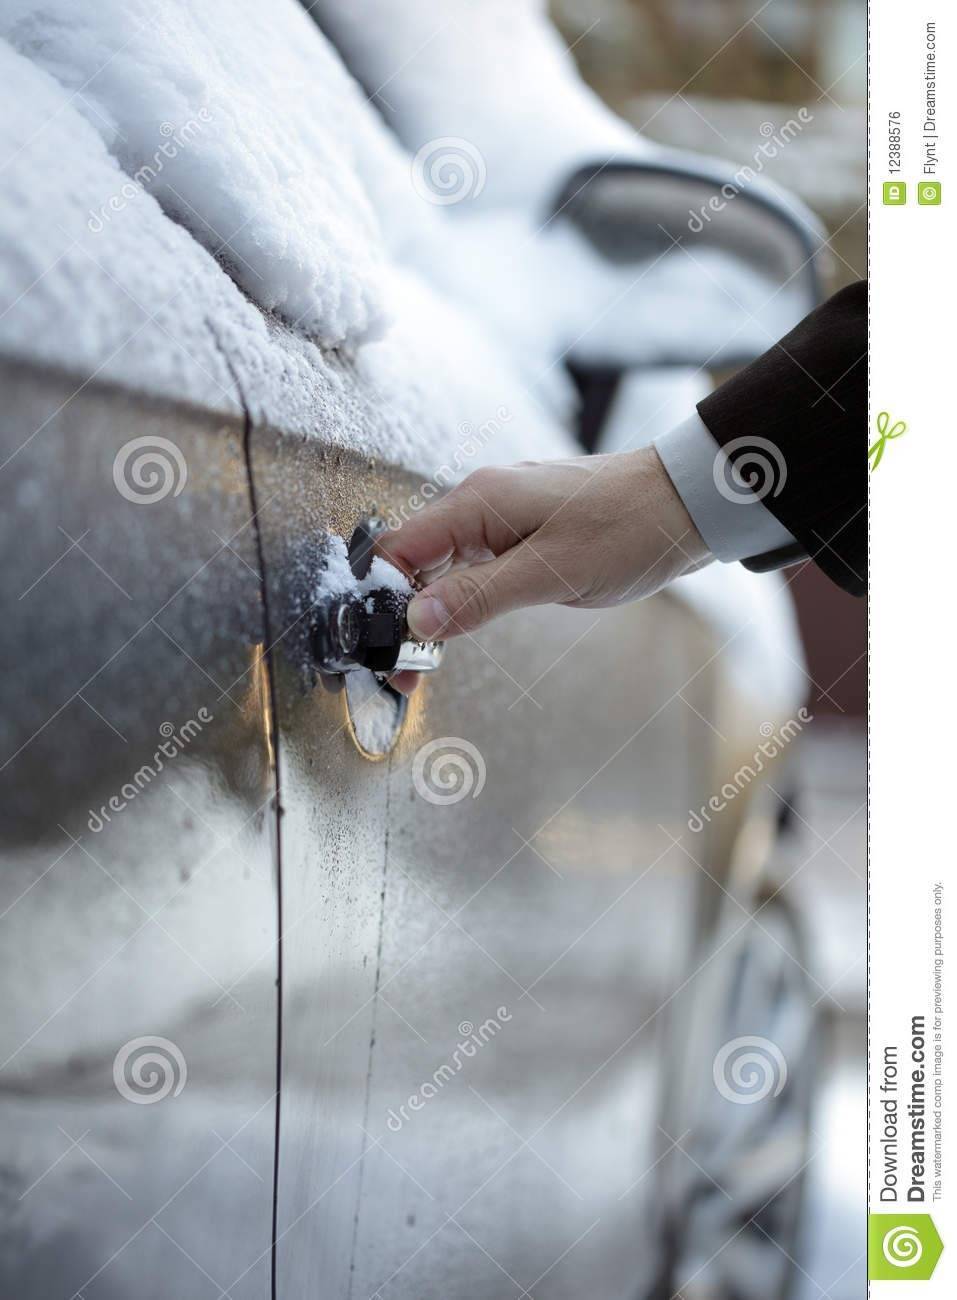 Замерз замок в двери машины - 6 простых способов открыть примерзшую дверь